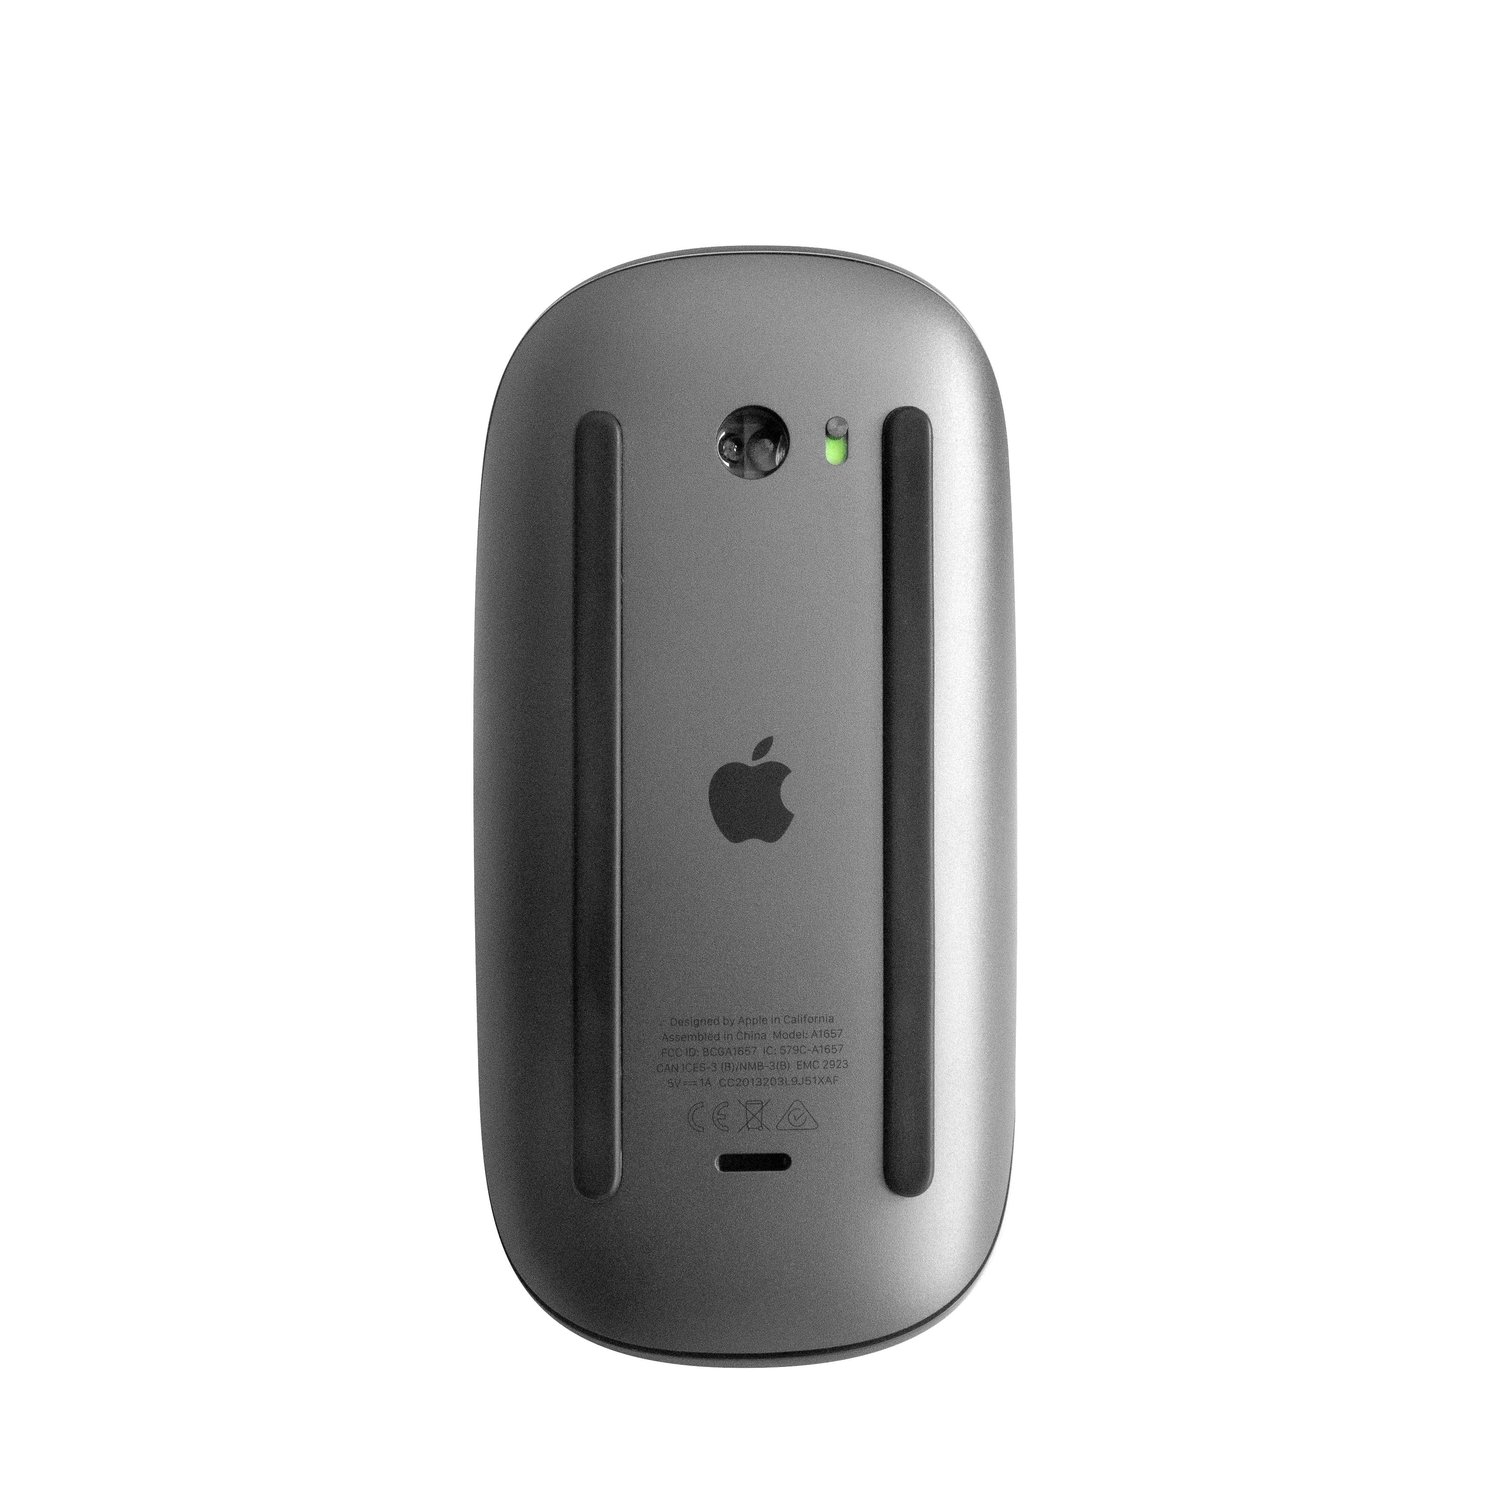 Apple MRME2LL/A Magic Mouse 2 (Current Model) - at MacSales.com